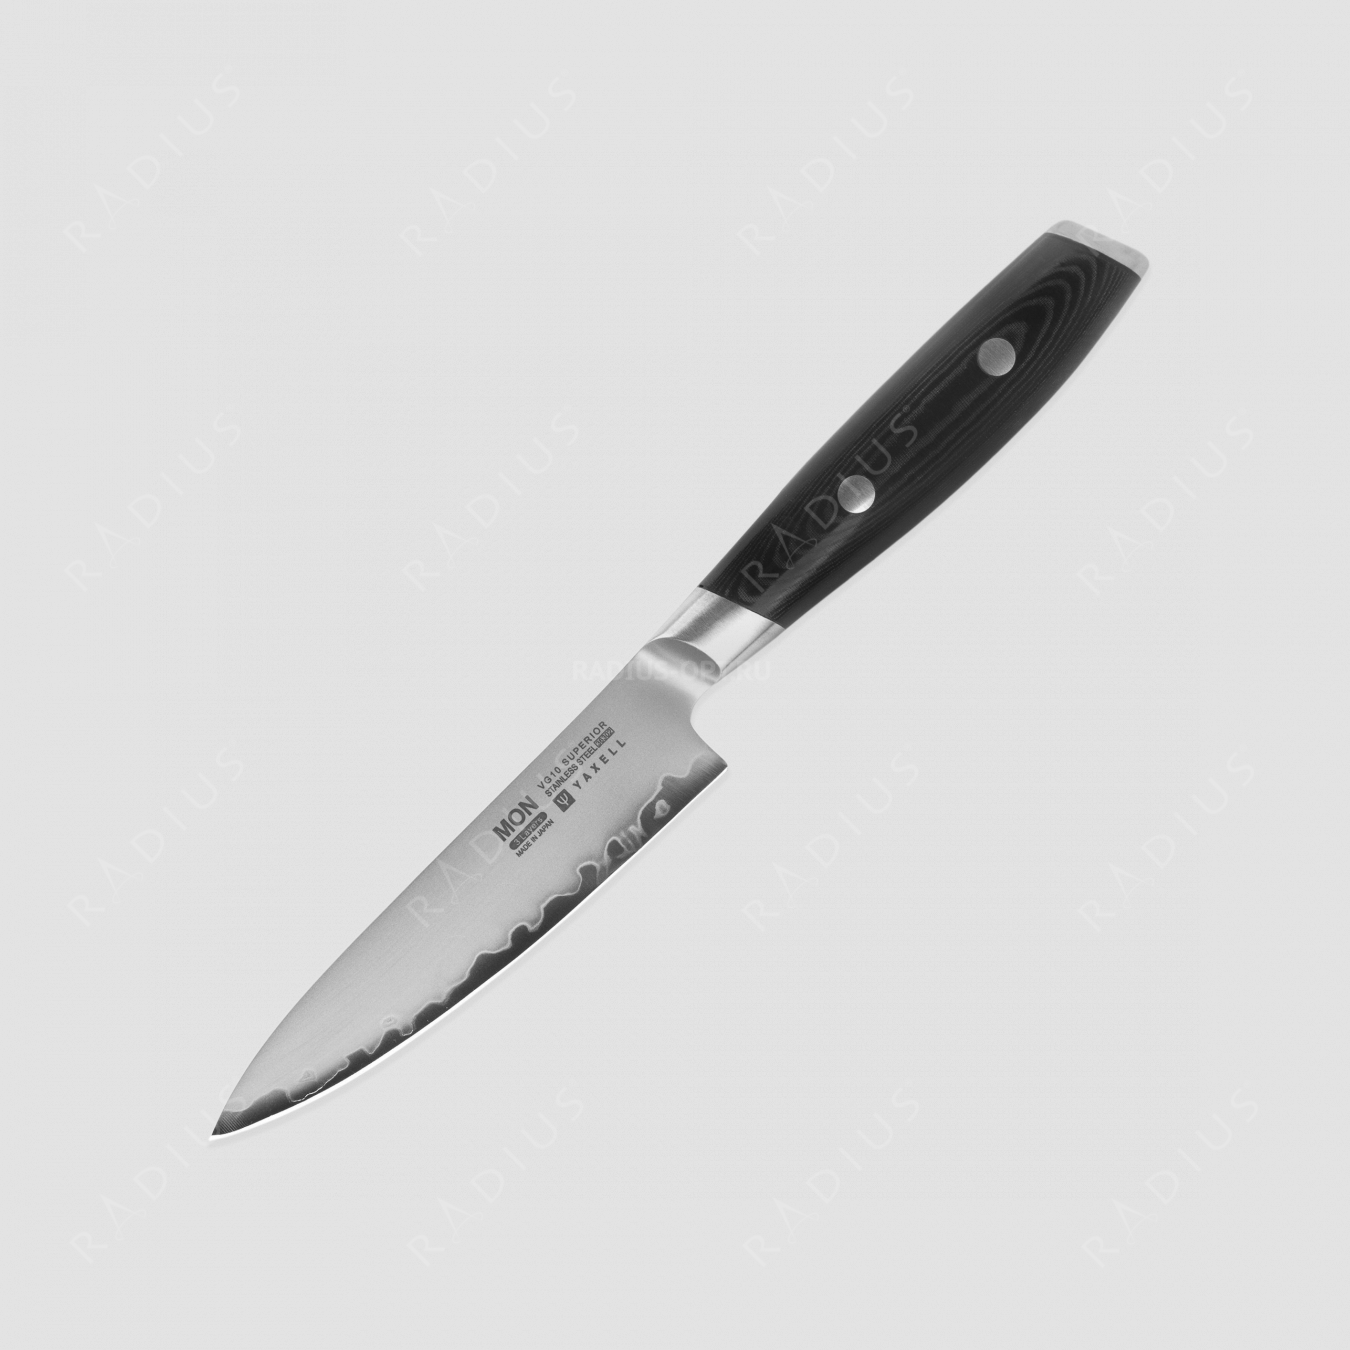 Нож кухонный универсальный 12 см, «Petty», сталь VG-10 в обкладке из нержавеющей стали, серия Mon, YAXELL, Япония